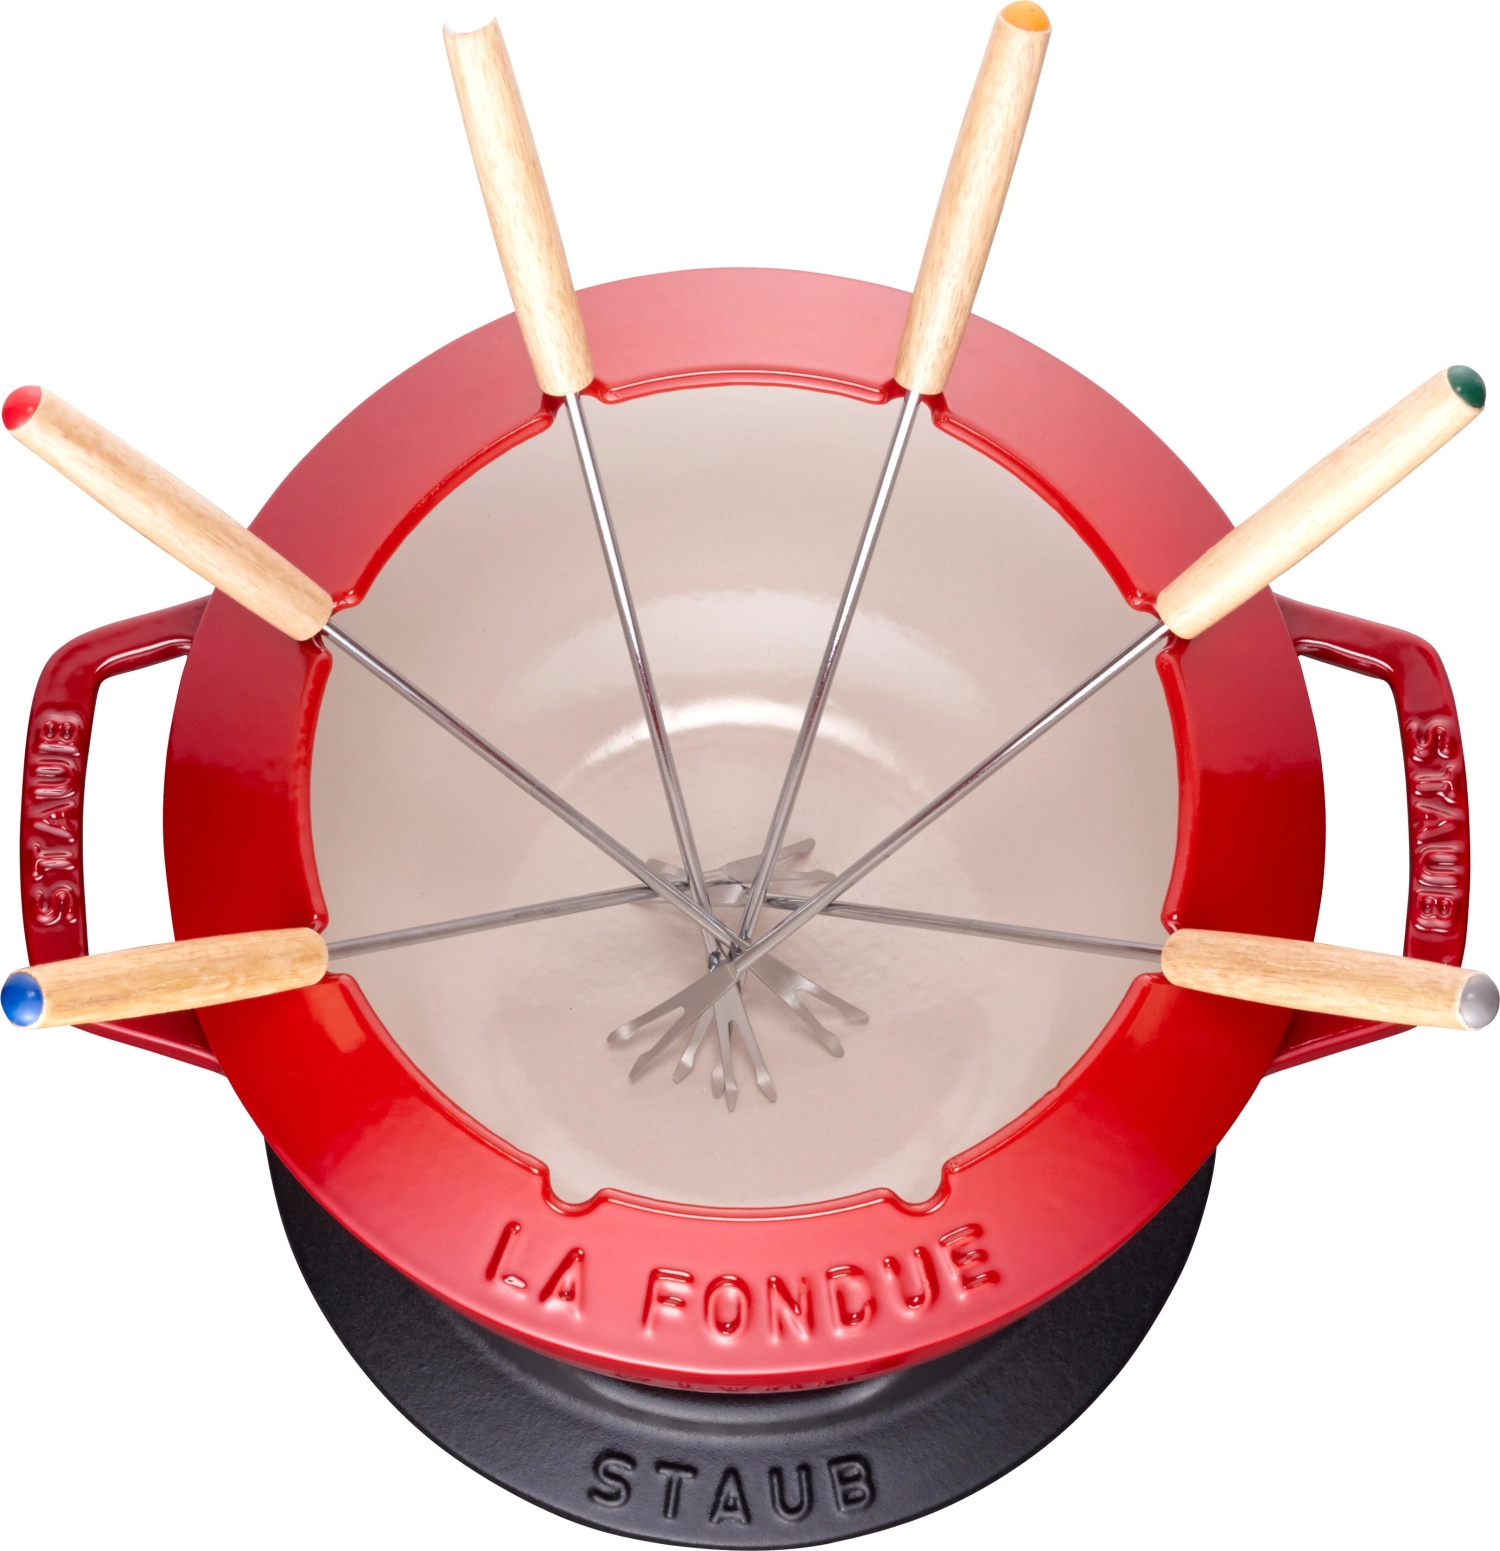 Service à fondue rouge cerise avec 2 poignées, rond. 20 cm